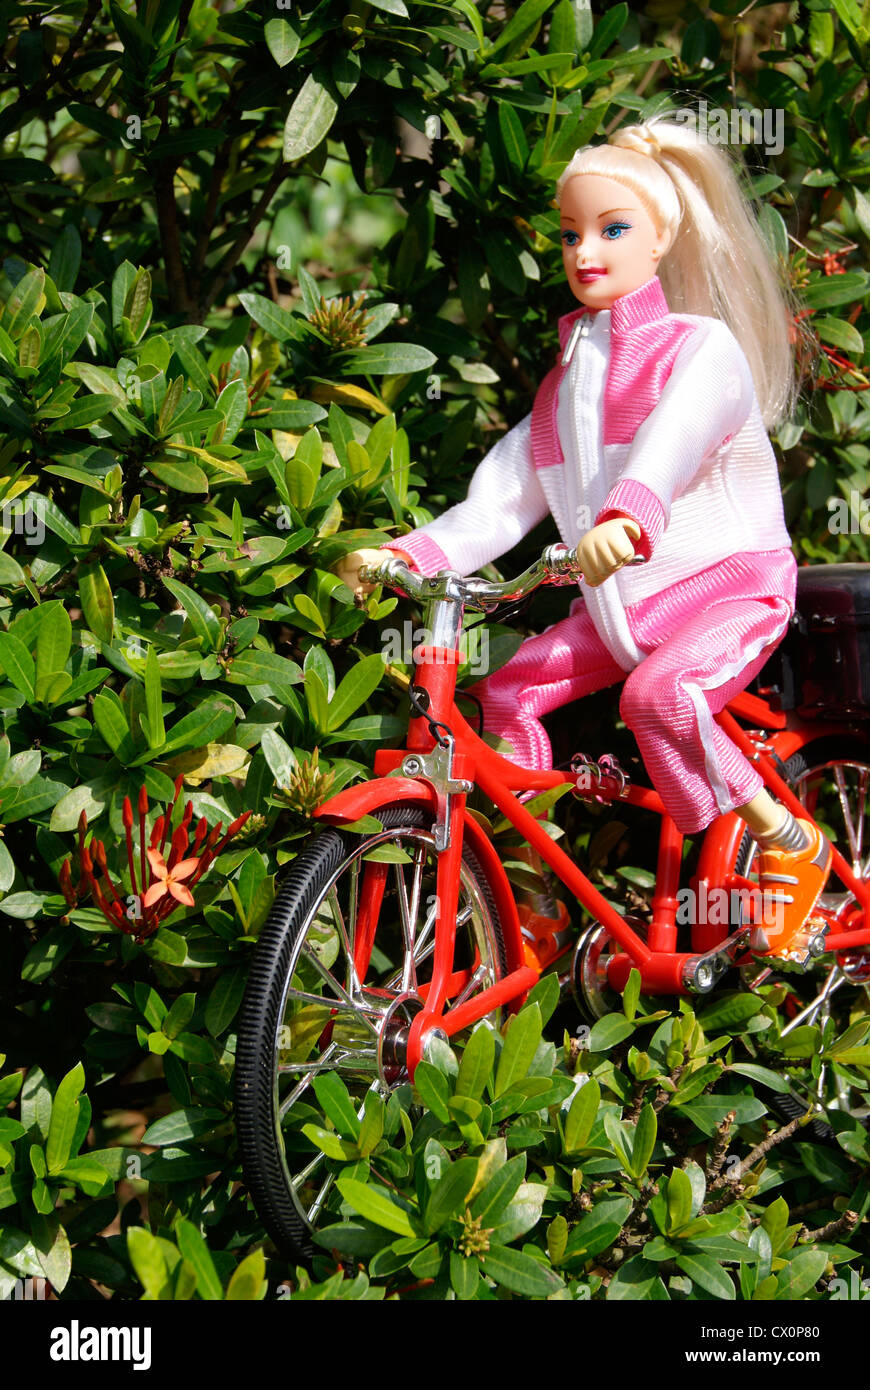 Puppe Mädchen Barbie Reiten Zyklus. Fahrrad fahren Spielzeug Front und  Seitenansicht Stockfotografie - Alamy